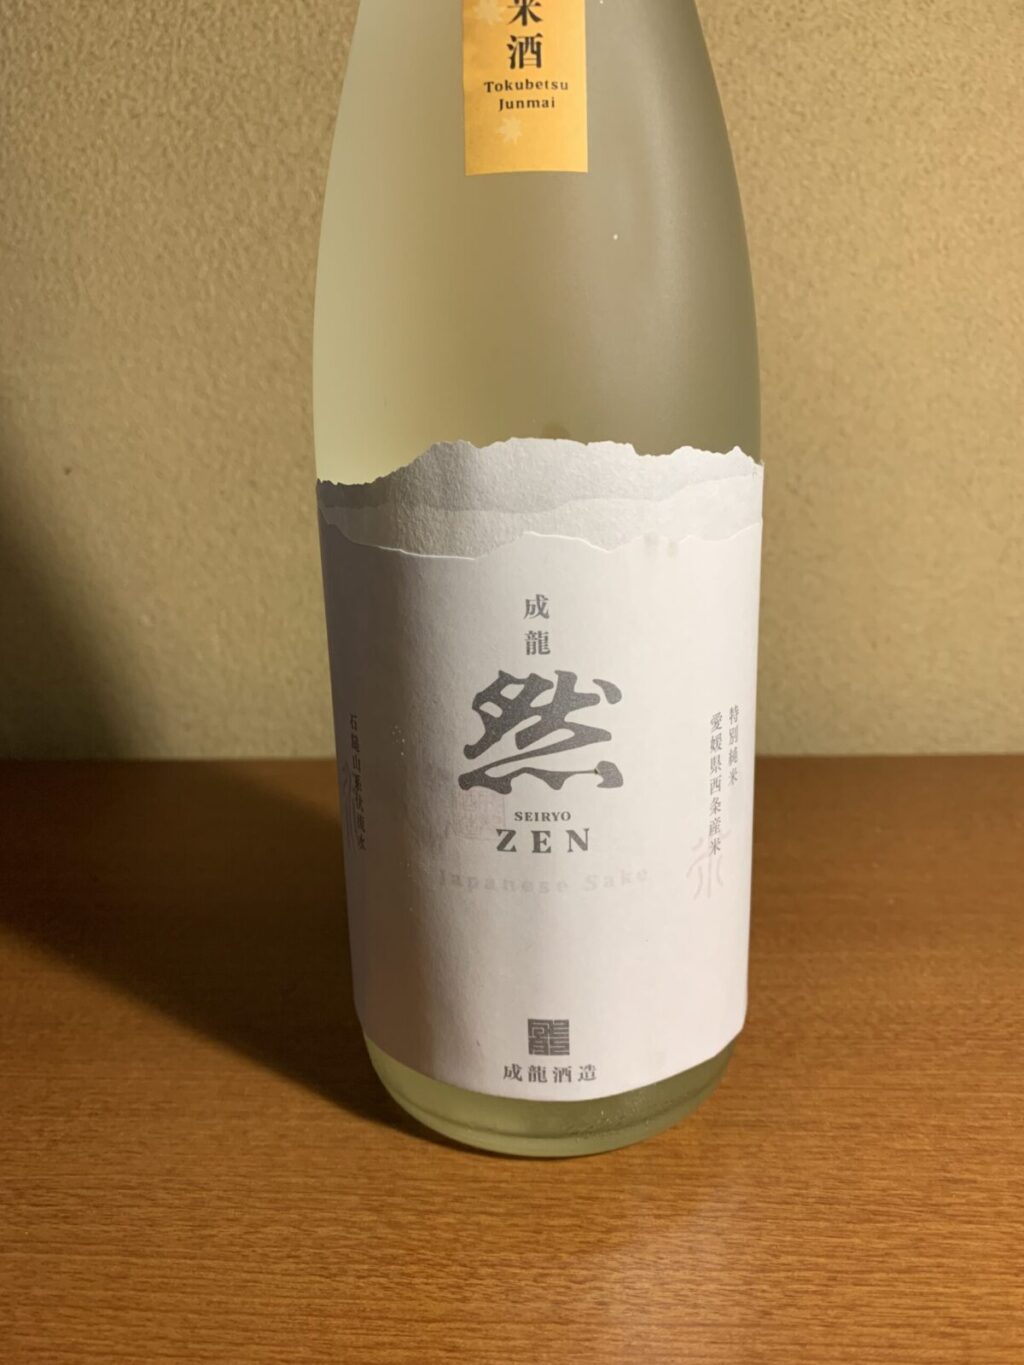 愛媛の日本酒『成龍然/あきふかし』は飲み飽きしない、まろやかで奥行きのある優しい旨味